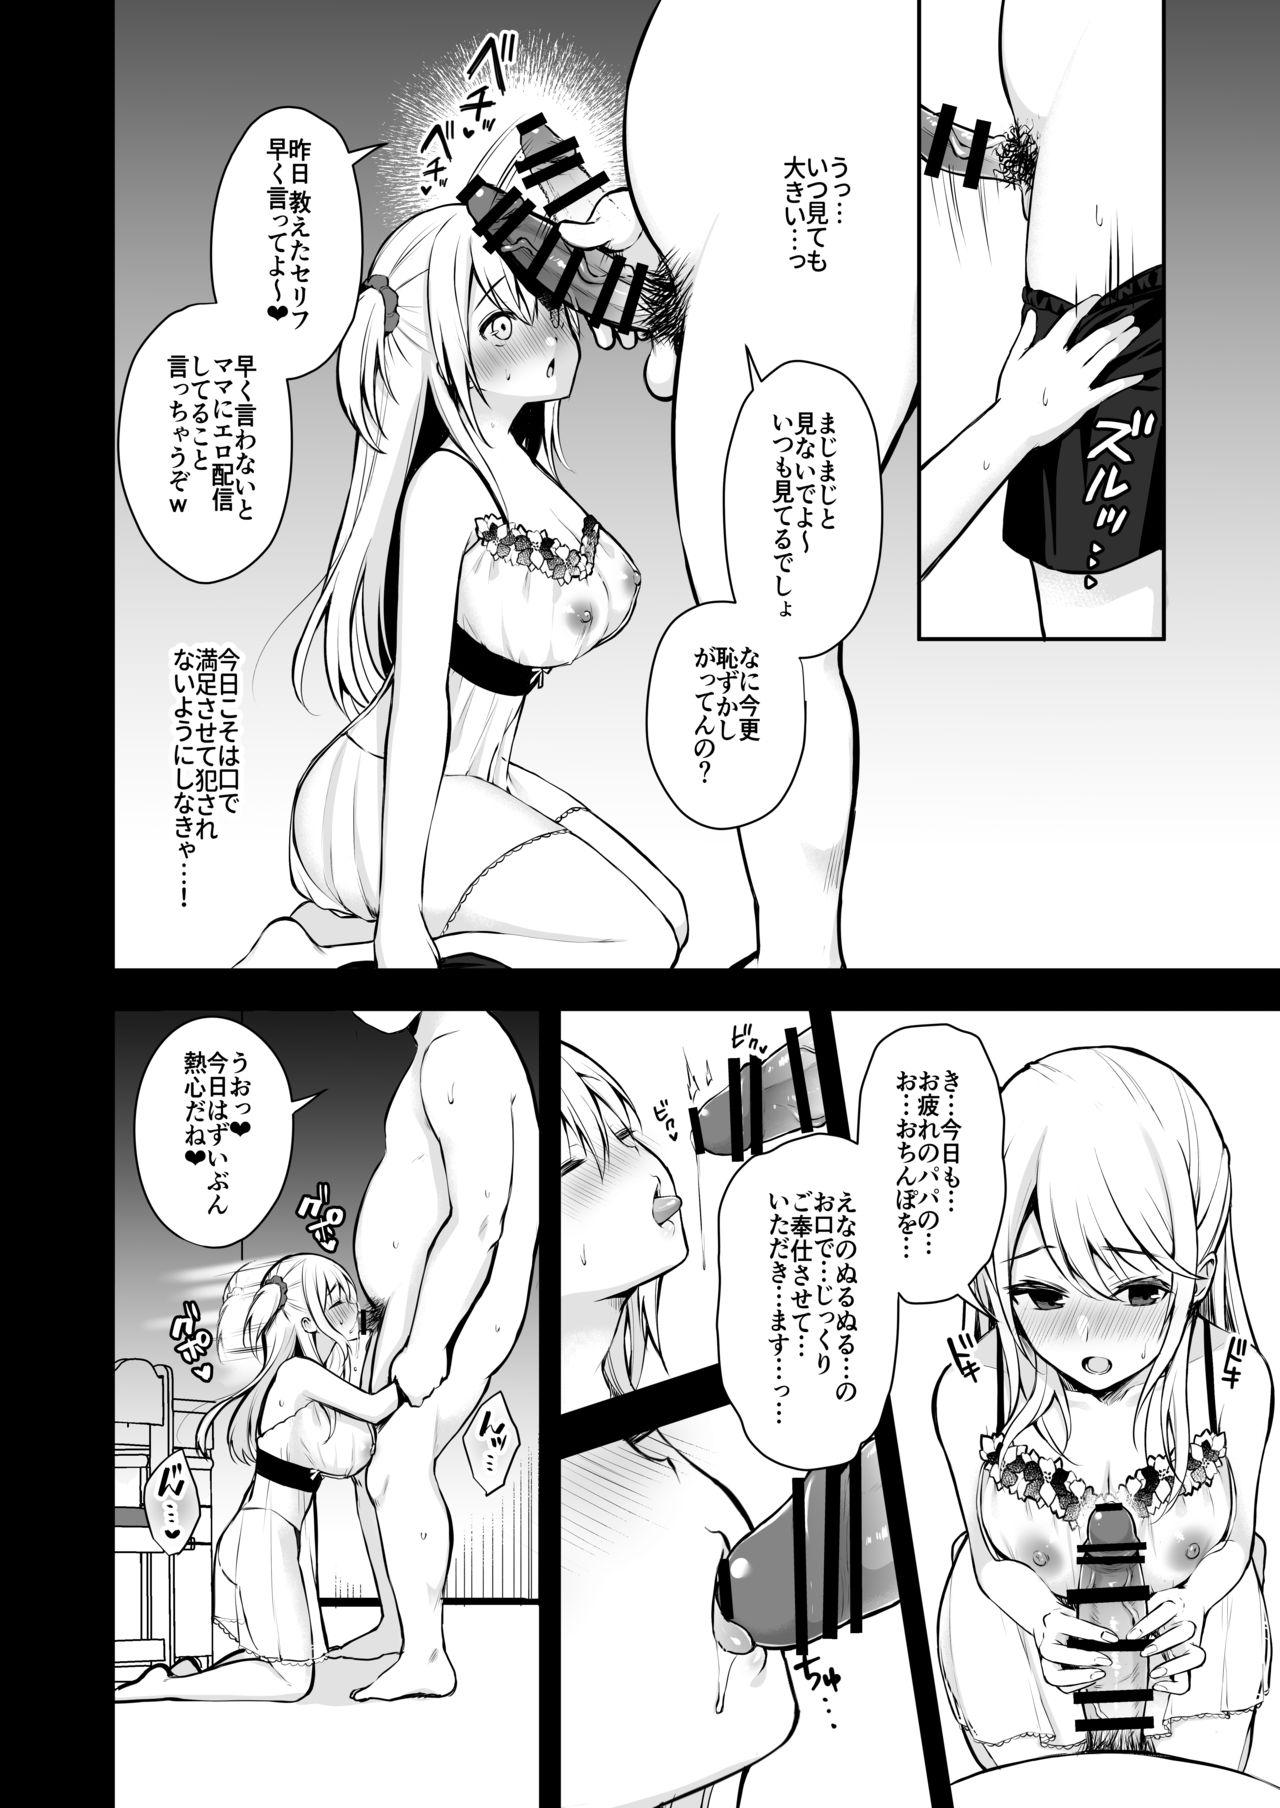 Closeups Himitsu 3 - Original Porno 18 - Page 9